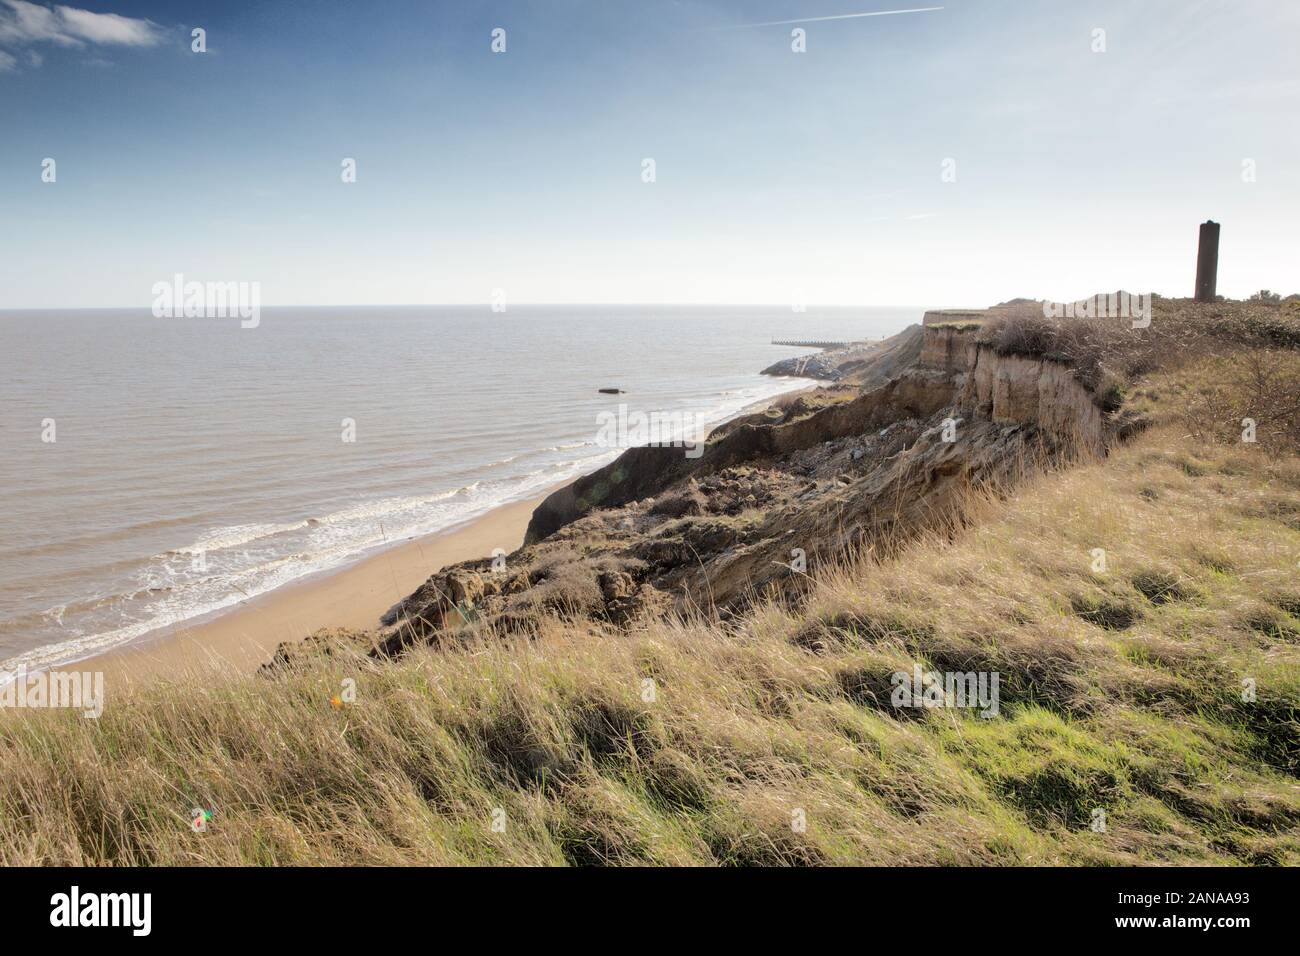 Landschaft Bild der Küste an der Walton-on-the-Naze naze in Essex mit dem Turm im Hintergrund, wo die Erosion der Küsten hat sich dramatisch frisst an Stockfoto